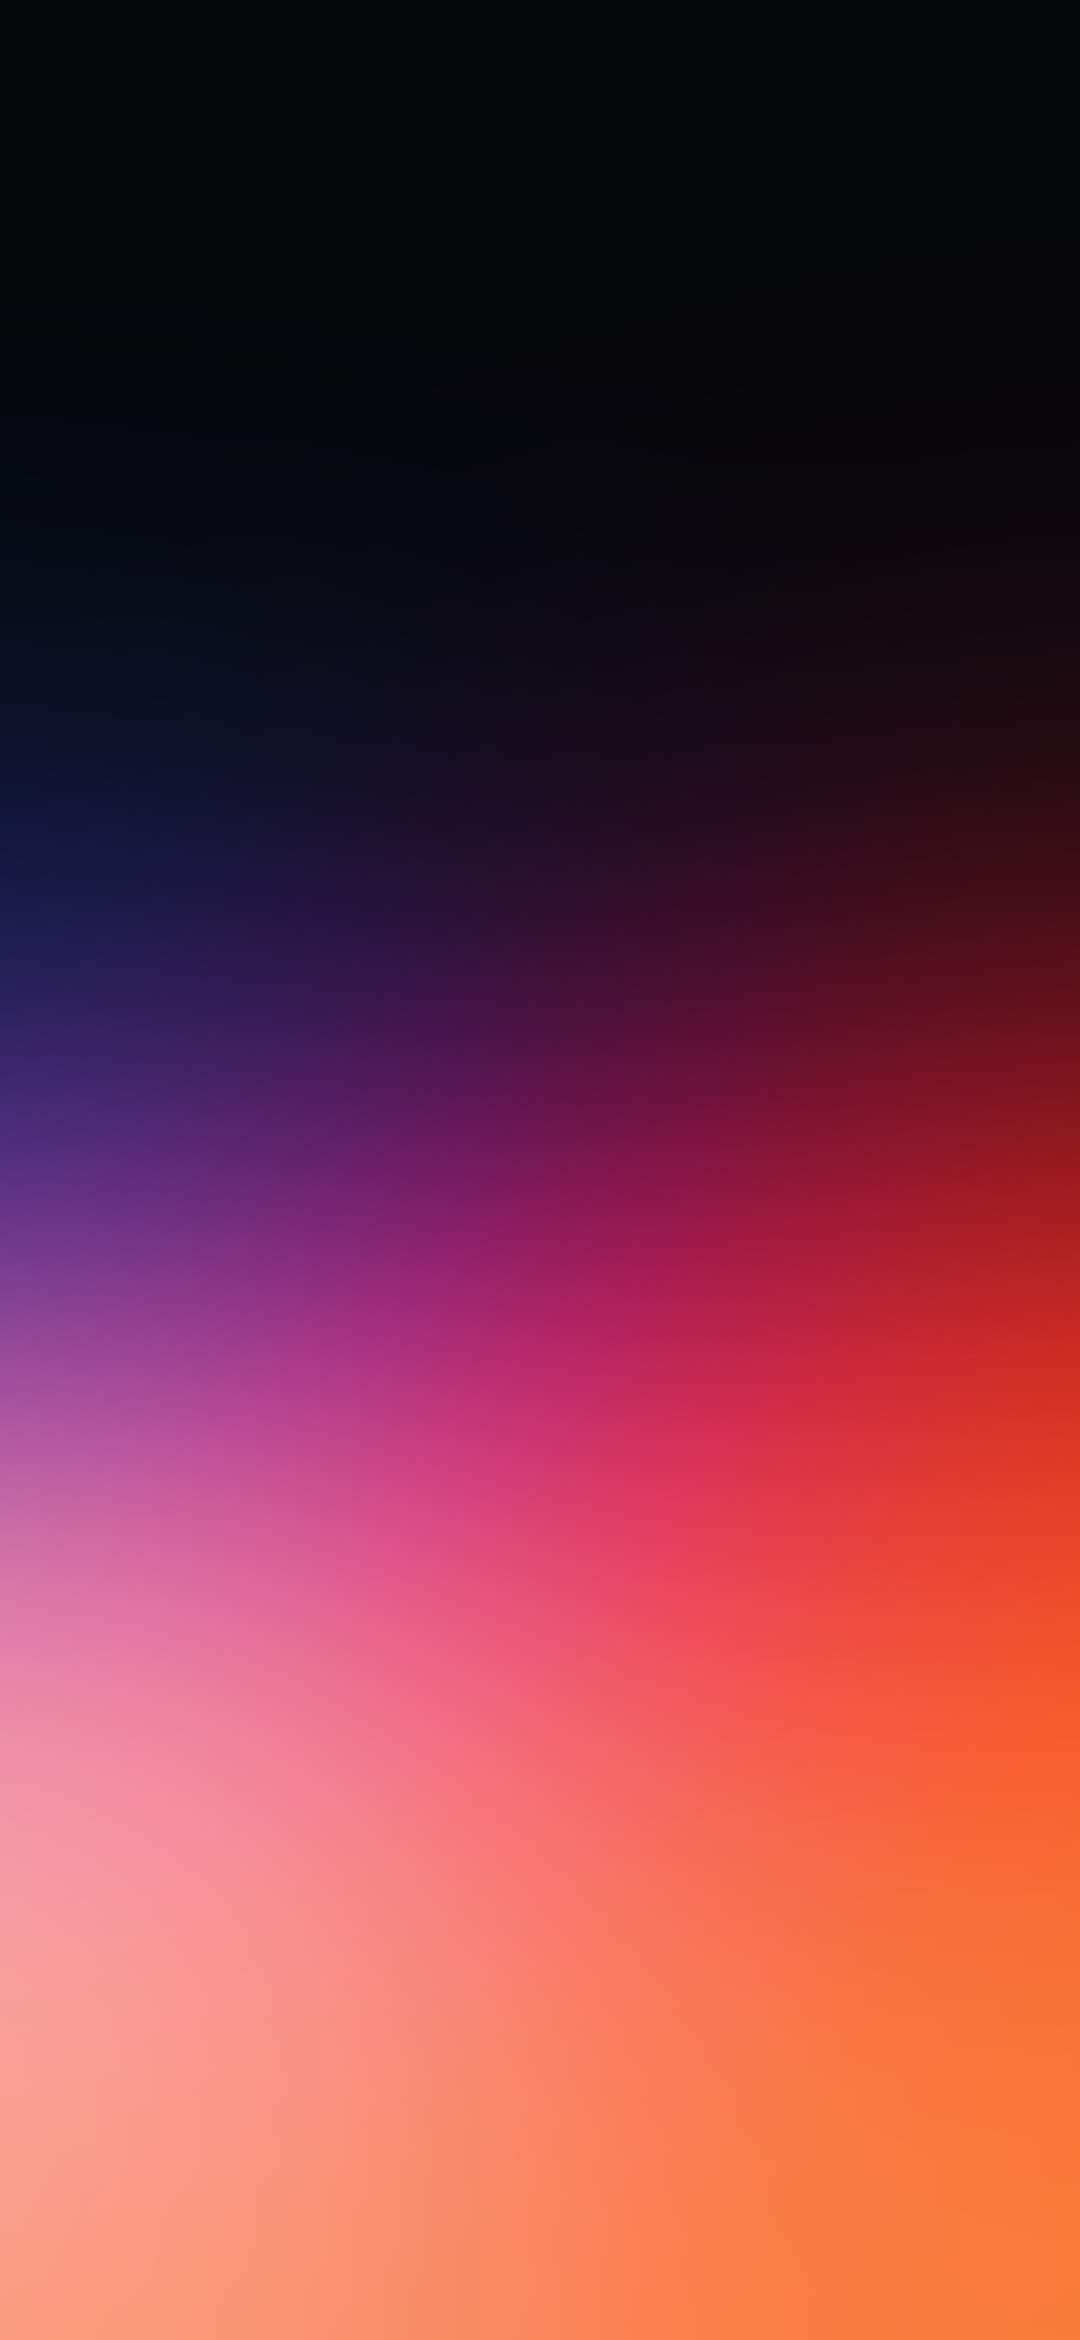 シンプルな紫 オレンジのグラデーション Black Shark2 Android スマホ壁紙 待ち受け スマラン